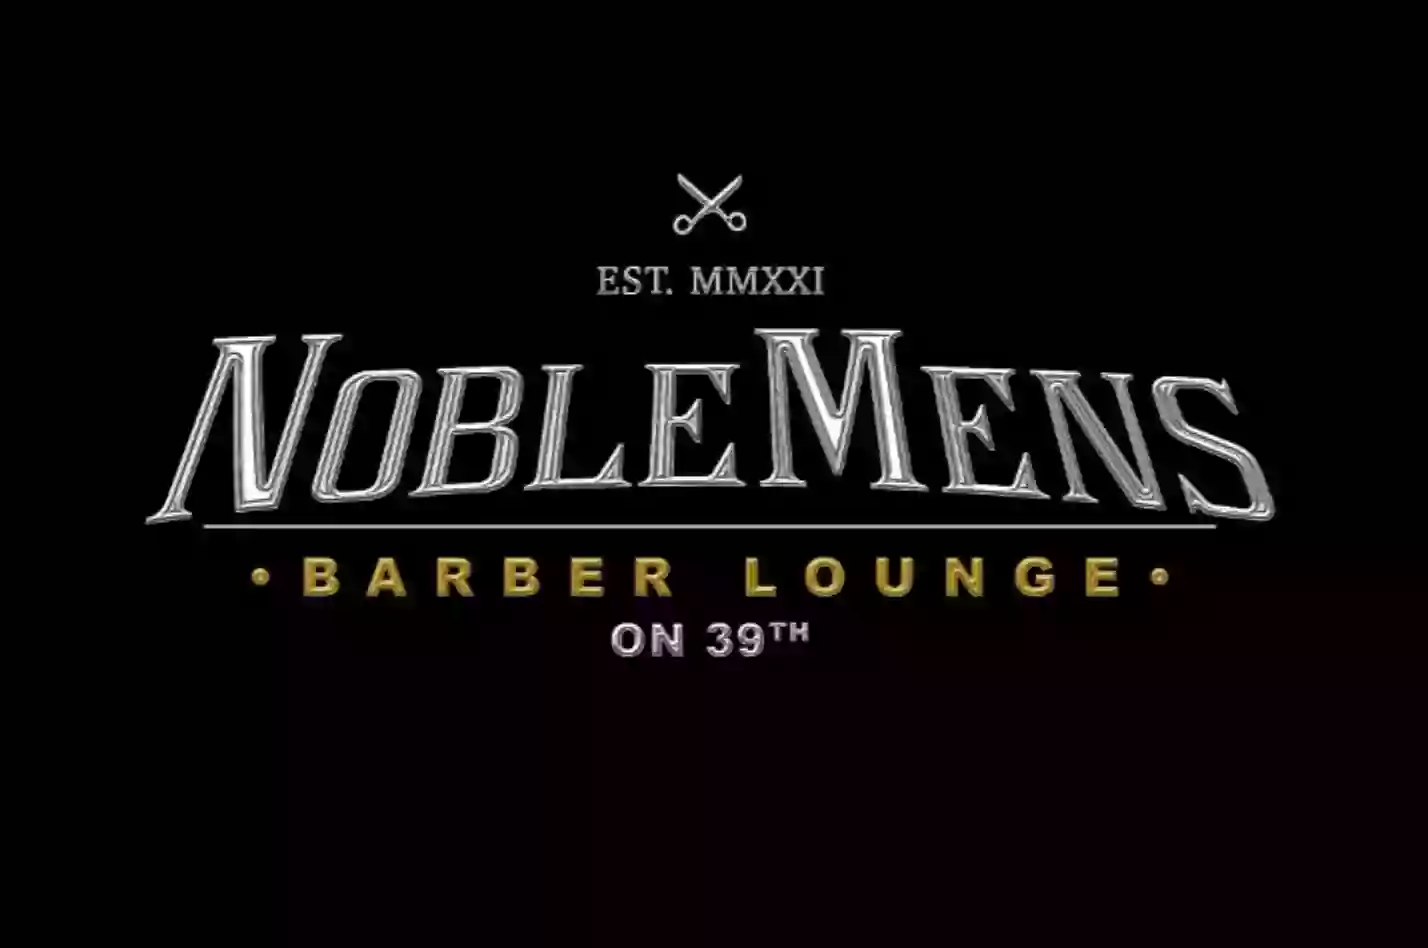 NobleMens Barber Lounge